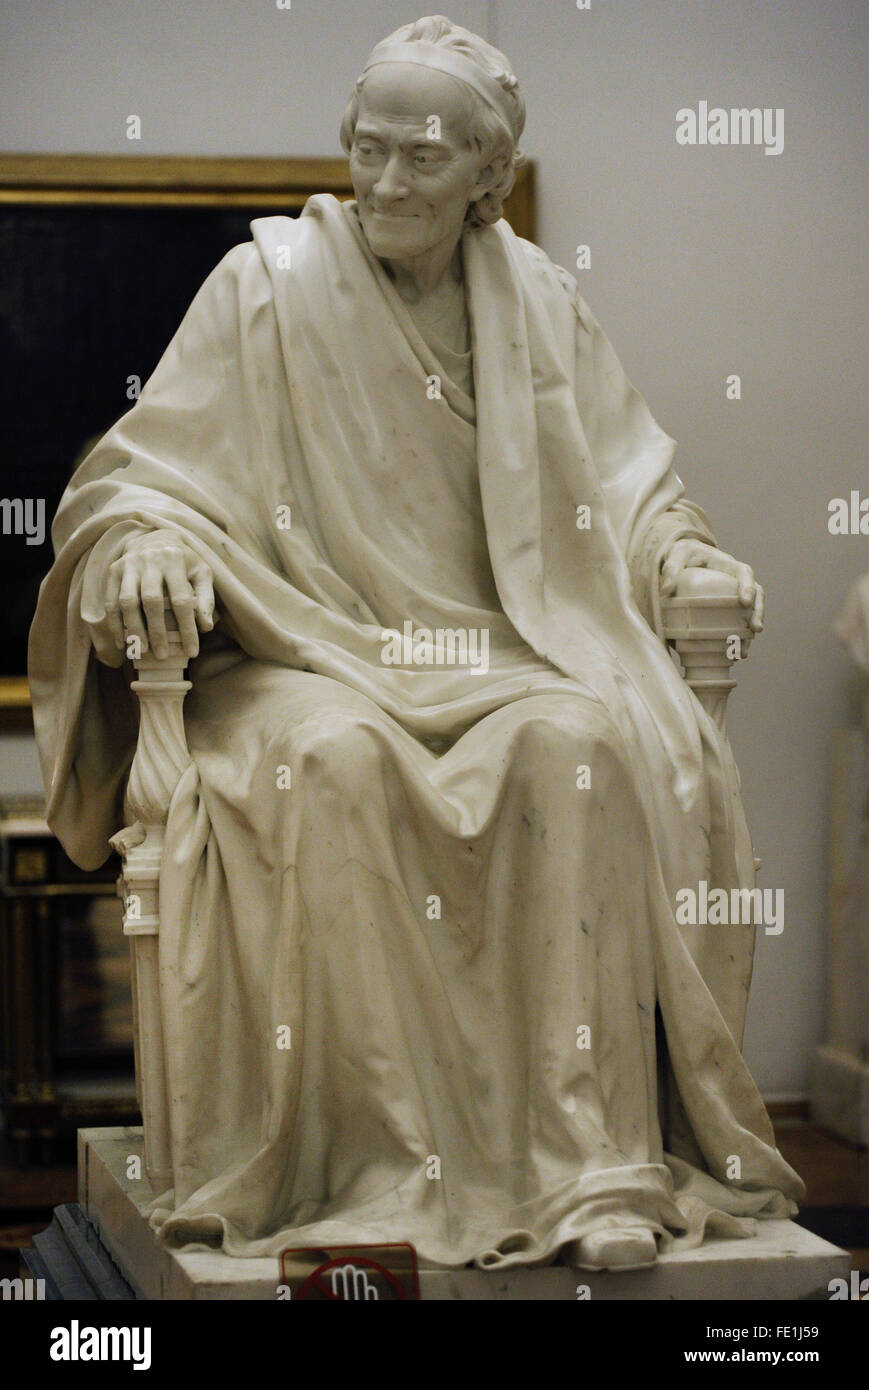 Voltaire, François-Marie Arouet genannt (1694-1778). Französischer Schriftsteller. Skulptur von Jean-Antoine Houdon (1741-1828), 1781. Die Eremitage. Sankt Petersburg. Russland. Stockfoto